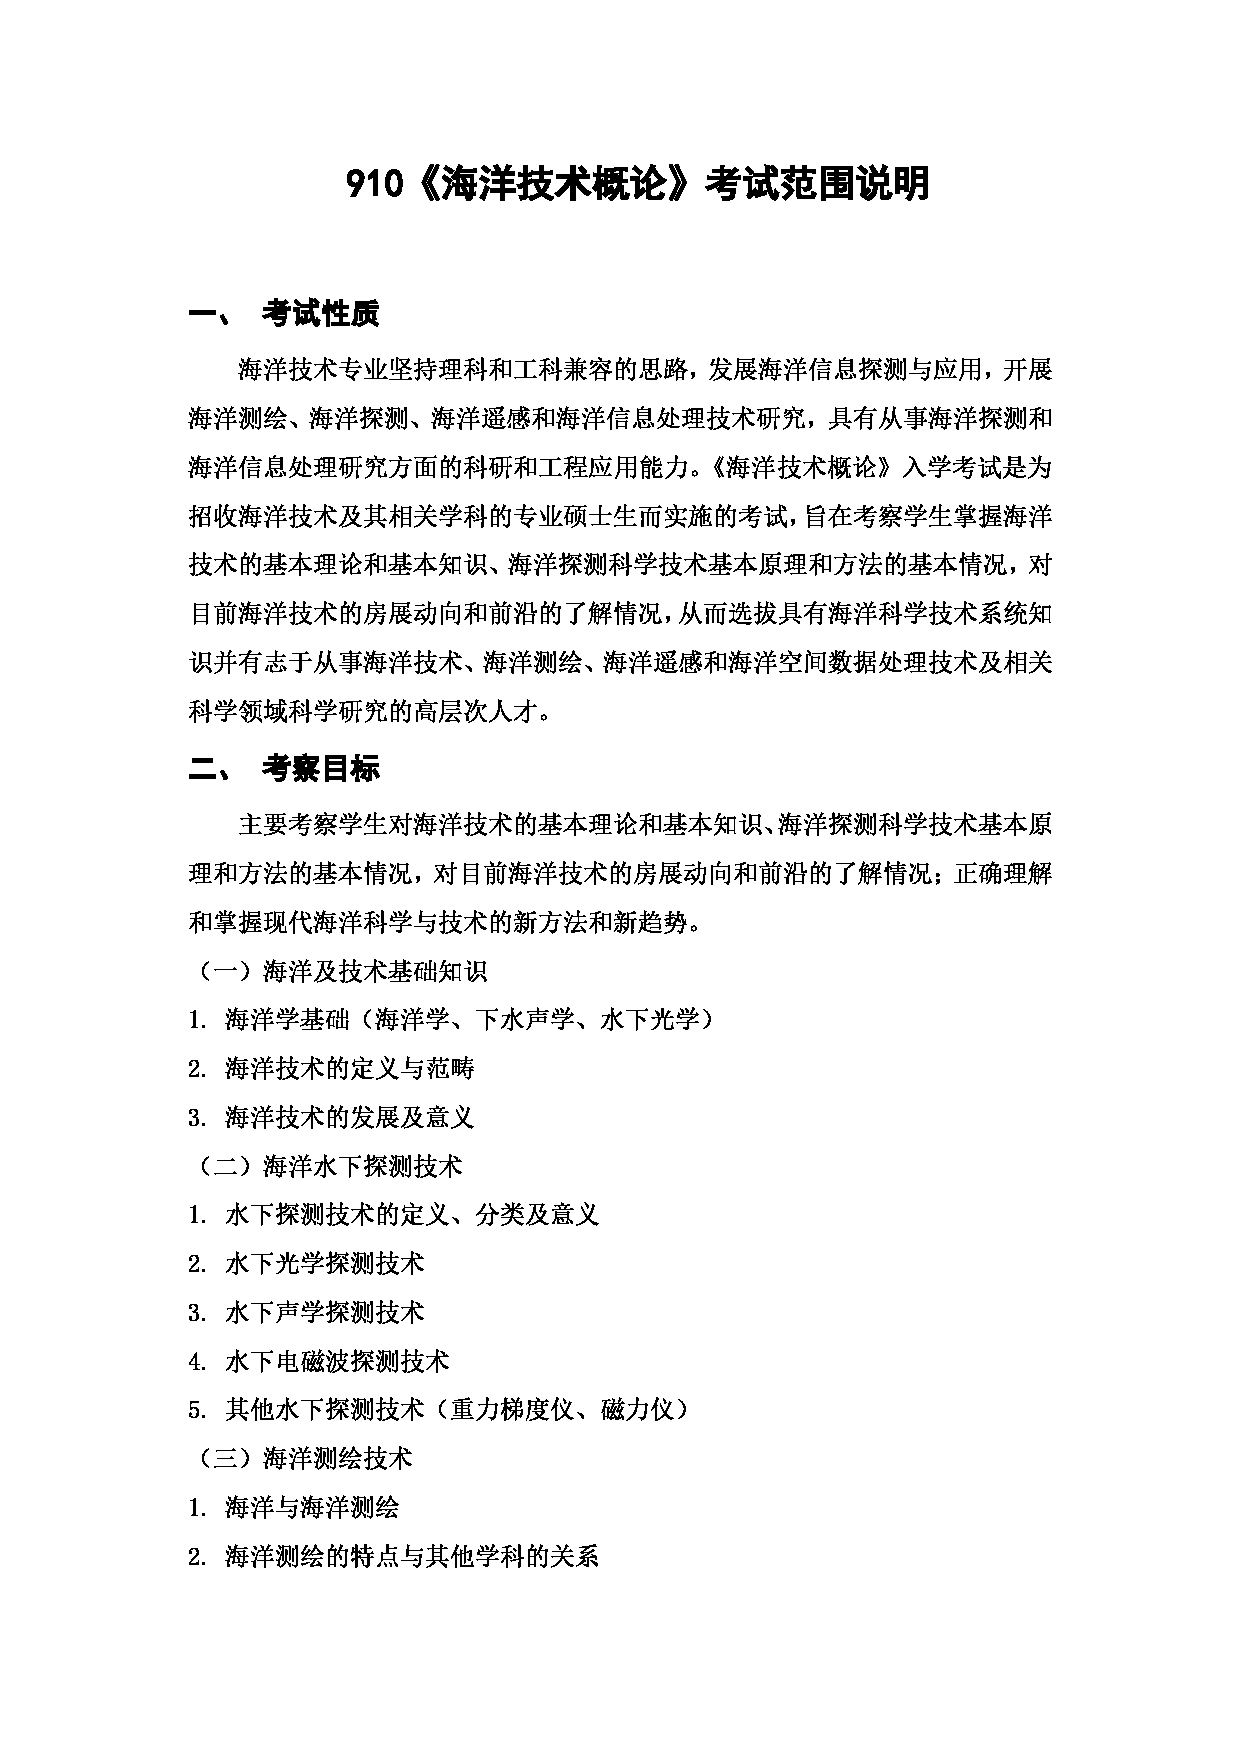 上海海洋大学2023年考研自命题科目 910《海洋技术概论》 考试范围第1页